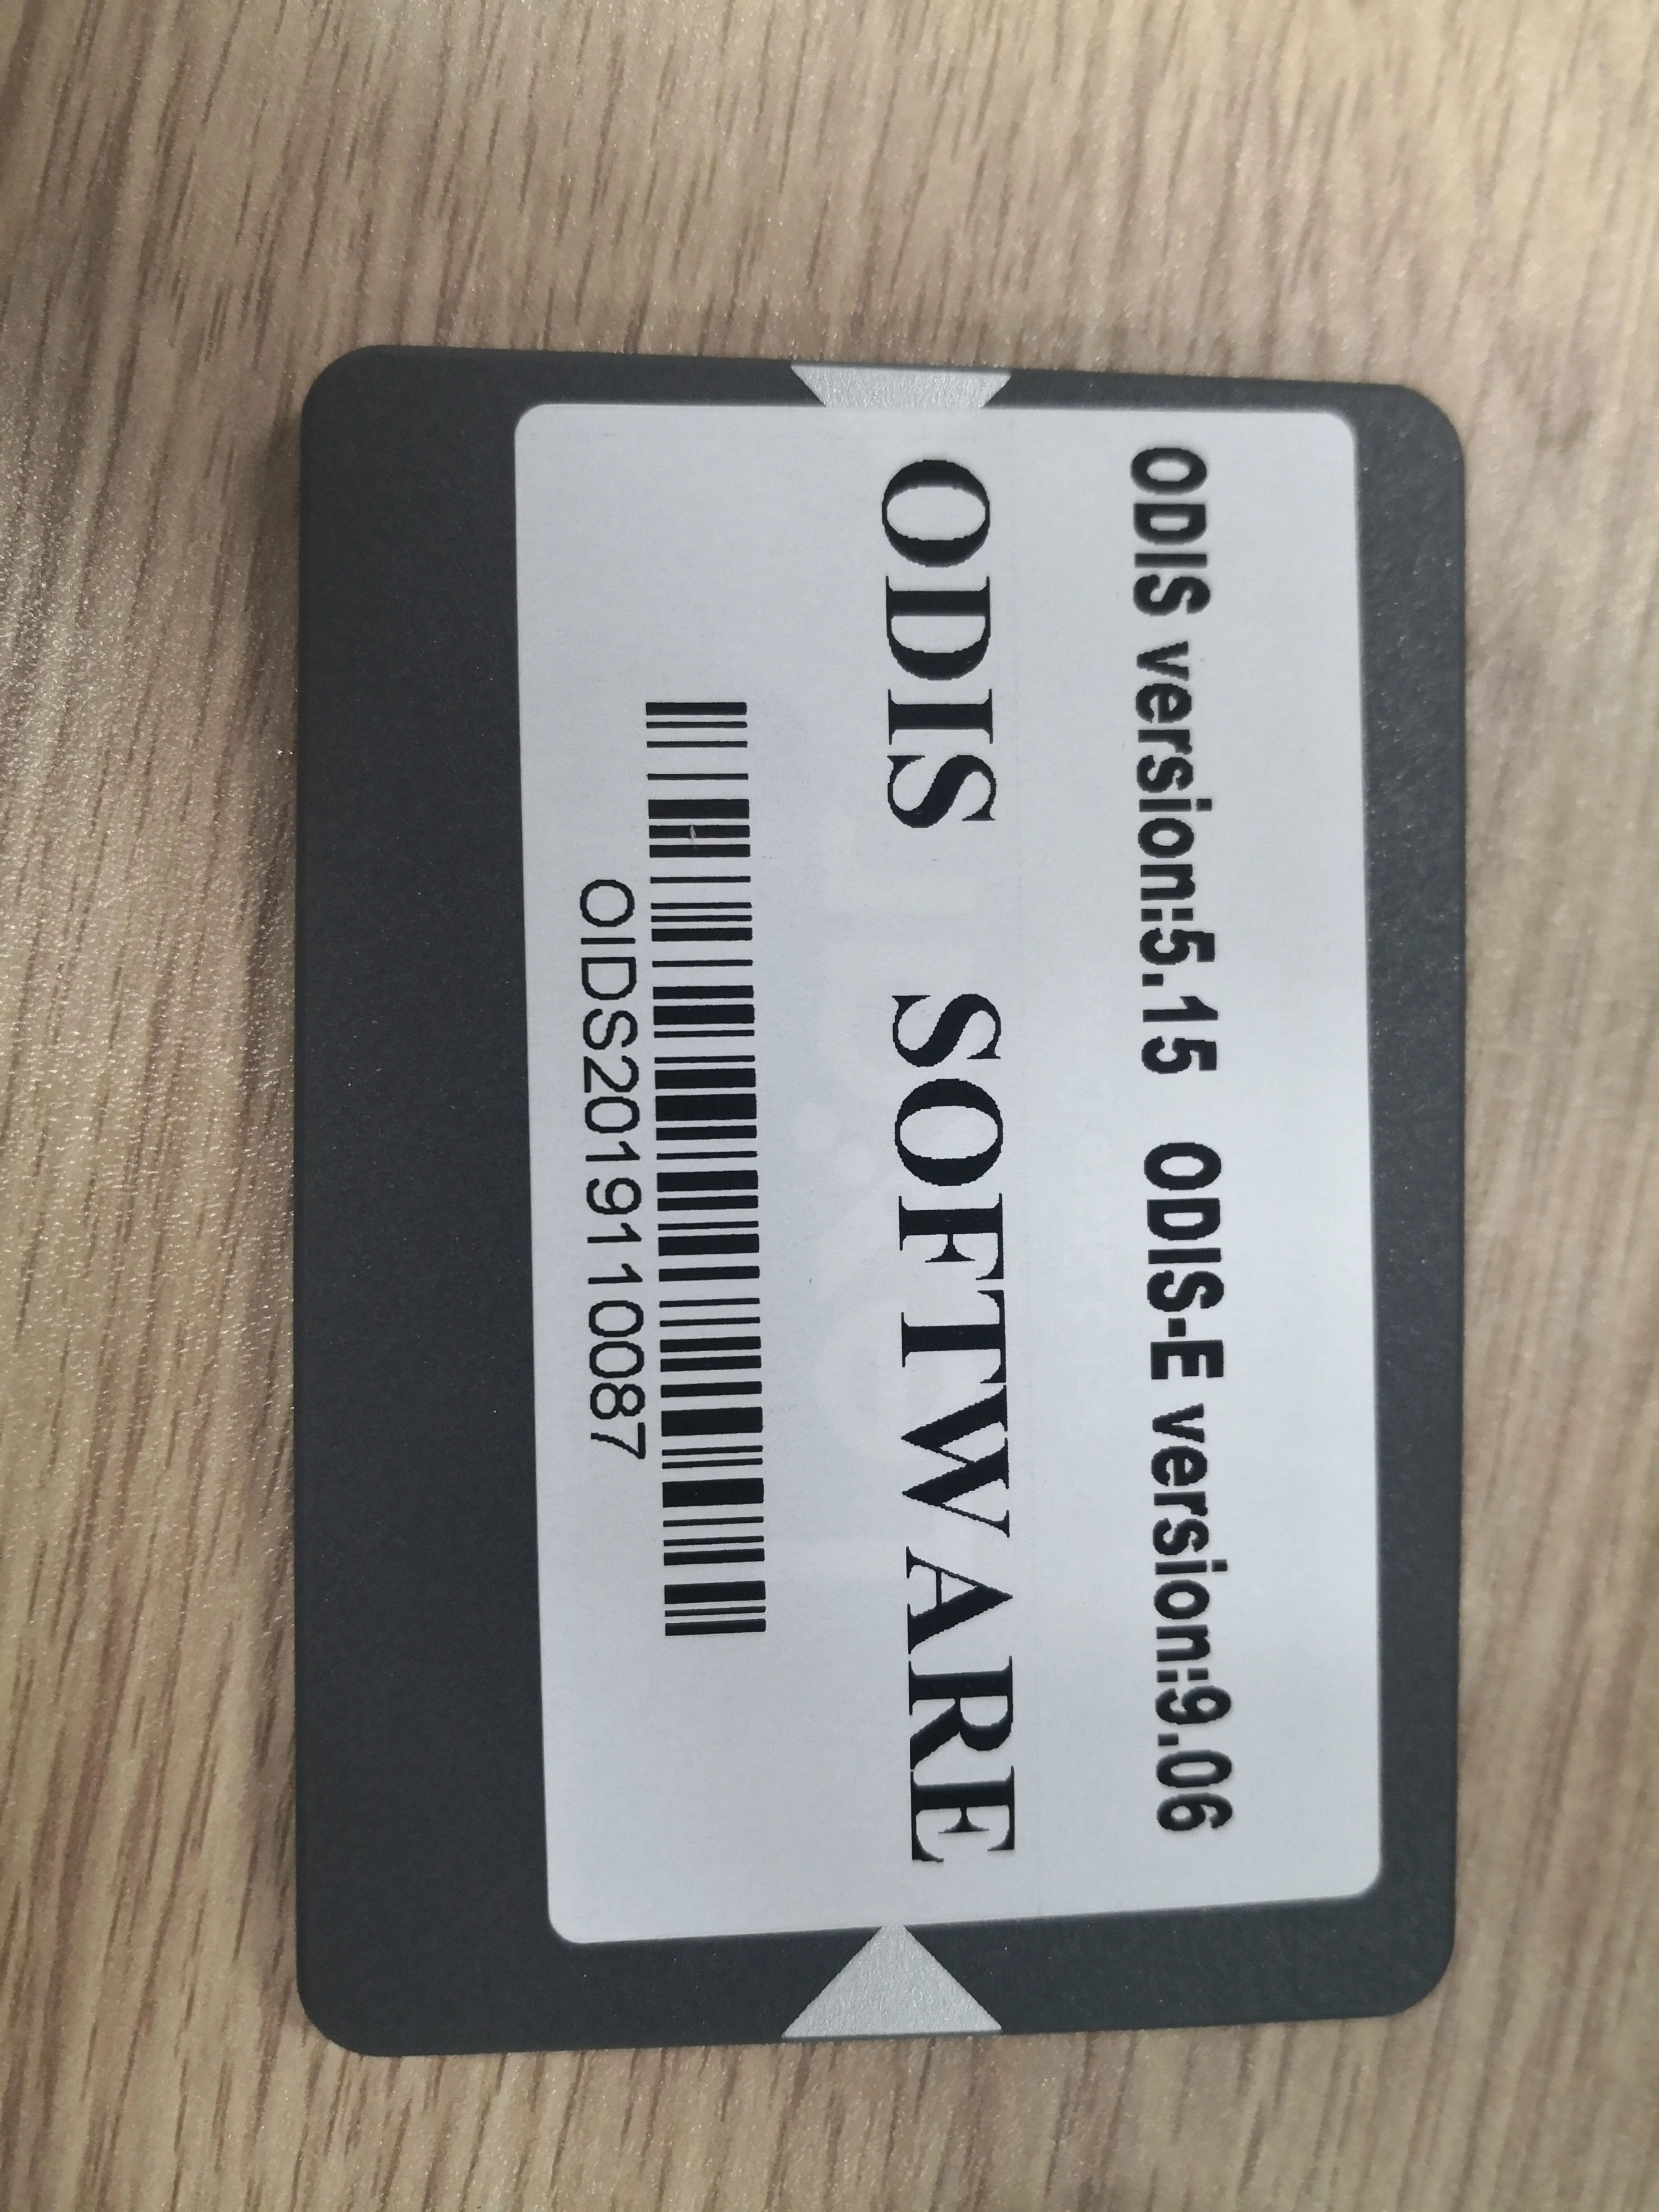 Vas 5054A Odis 5.1.6 программное обеспечение с инженерной 9/EKA 8/Elawin 6 VAS 6154 480GB SSD для AUDI/V-W GEKO онлайн кодирование входа